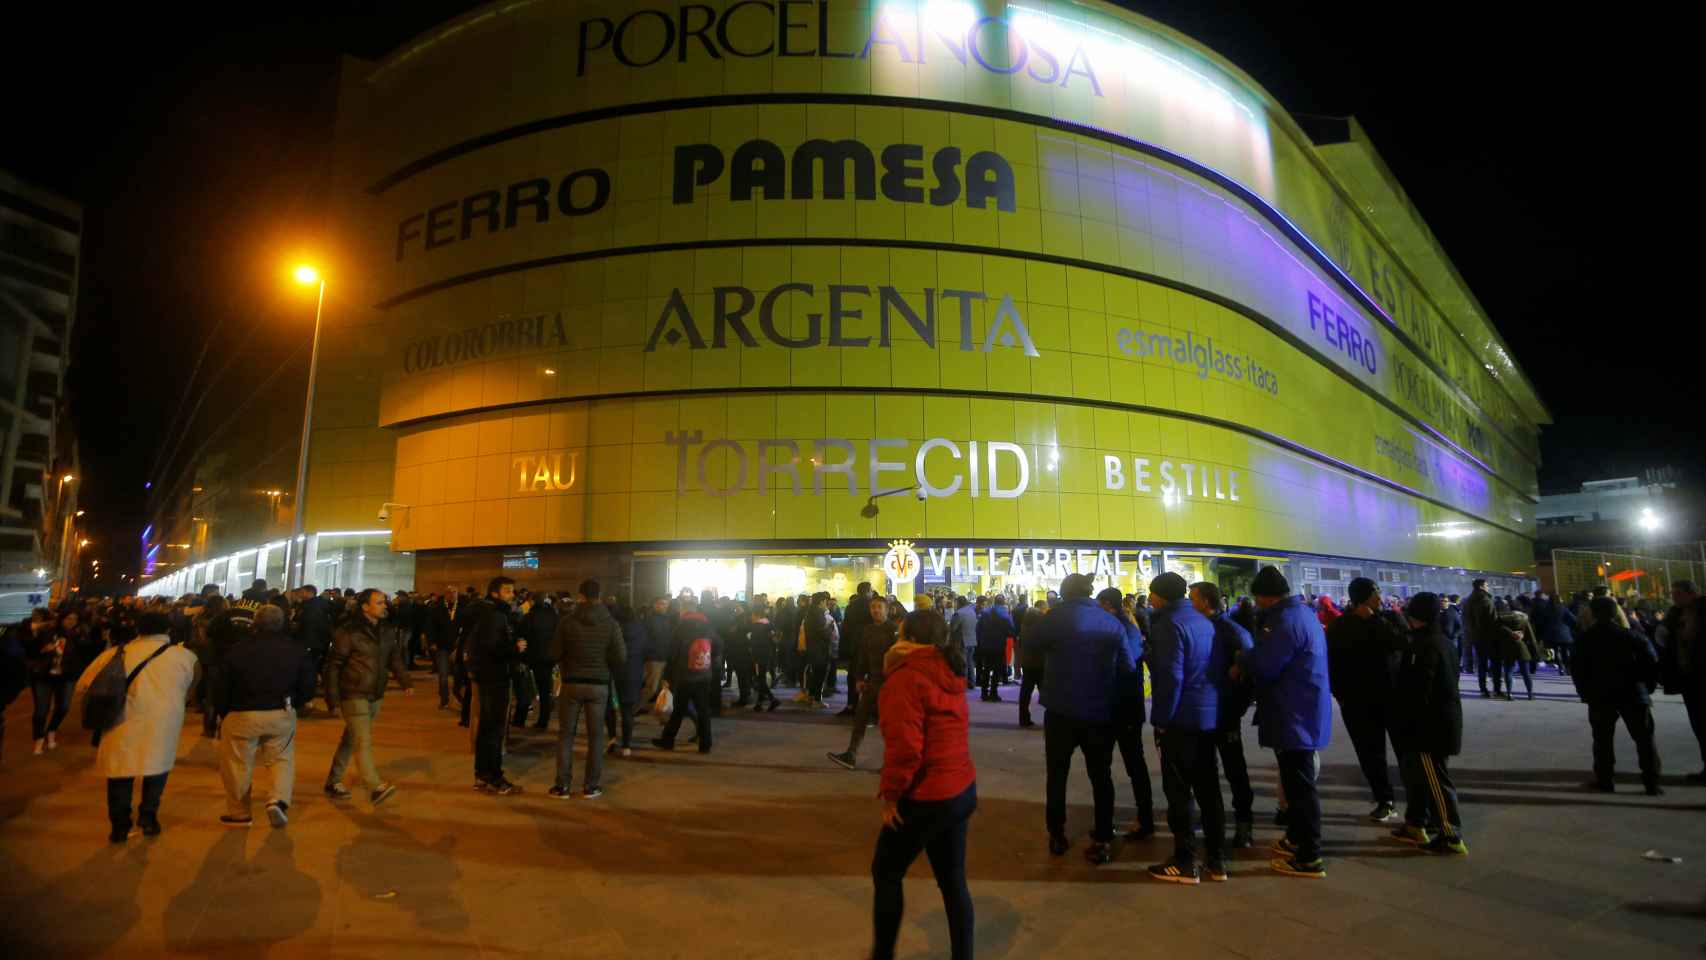 Estadio de la Cerámica, Villarreal